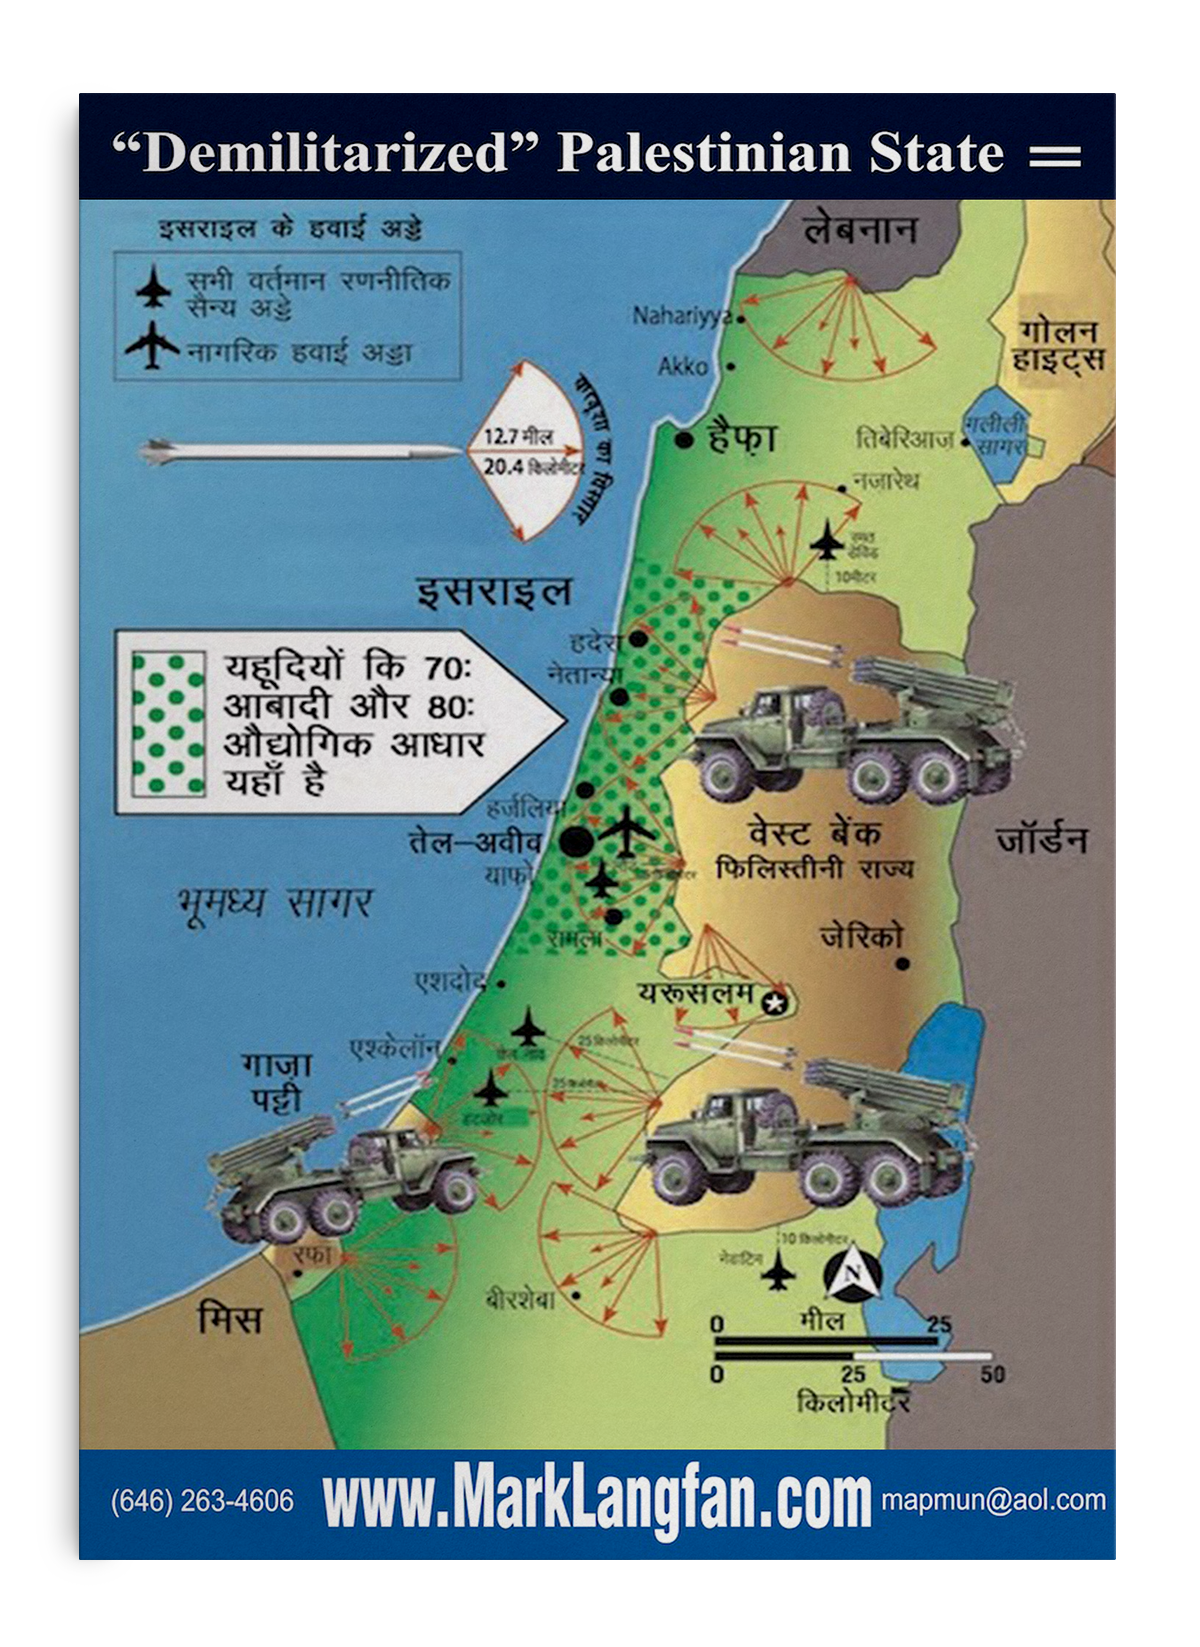 demilitarized palestinian state hindi